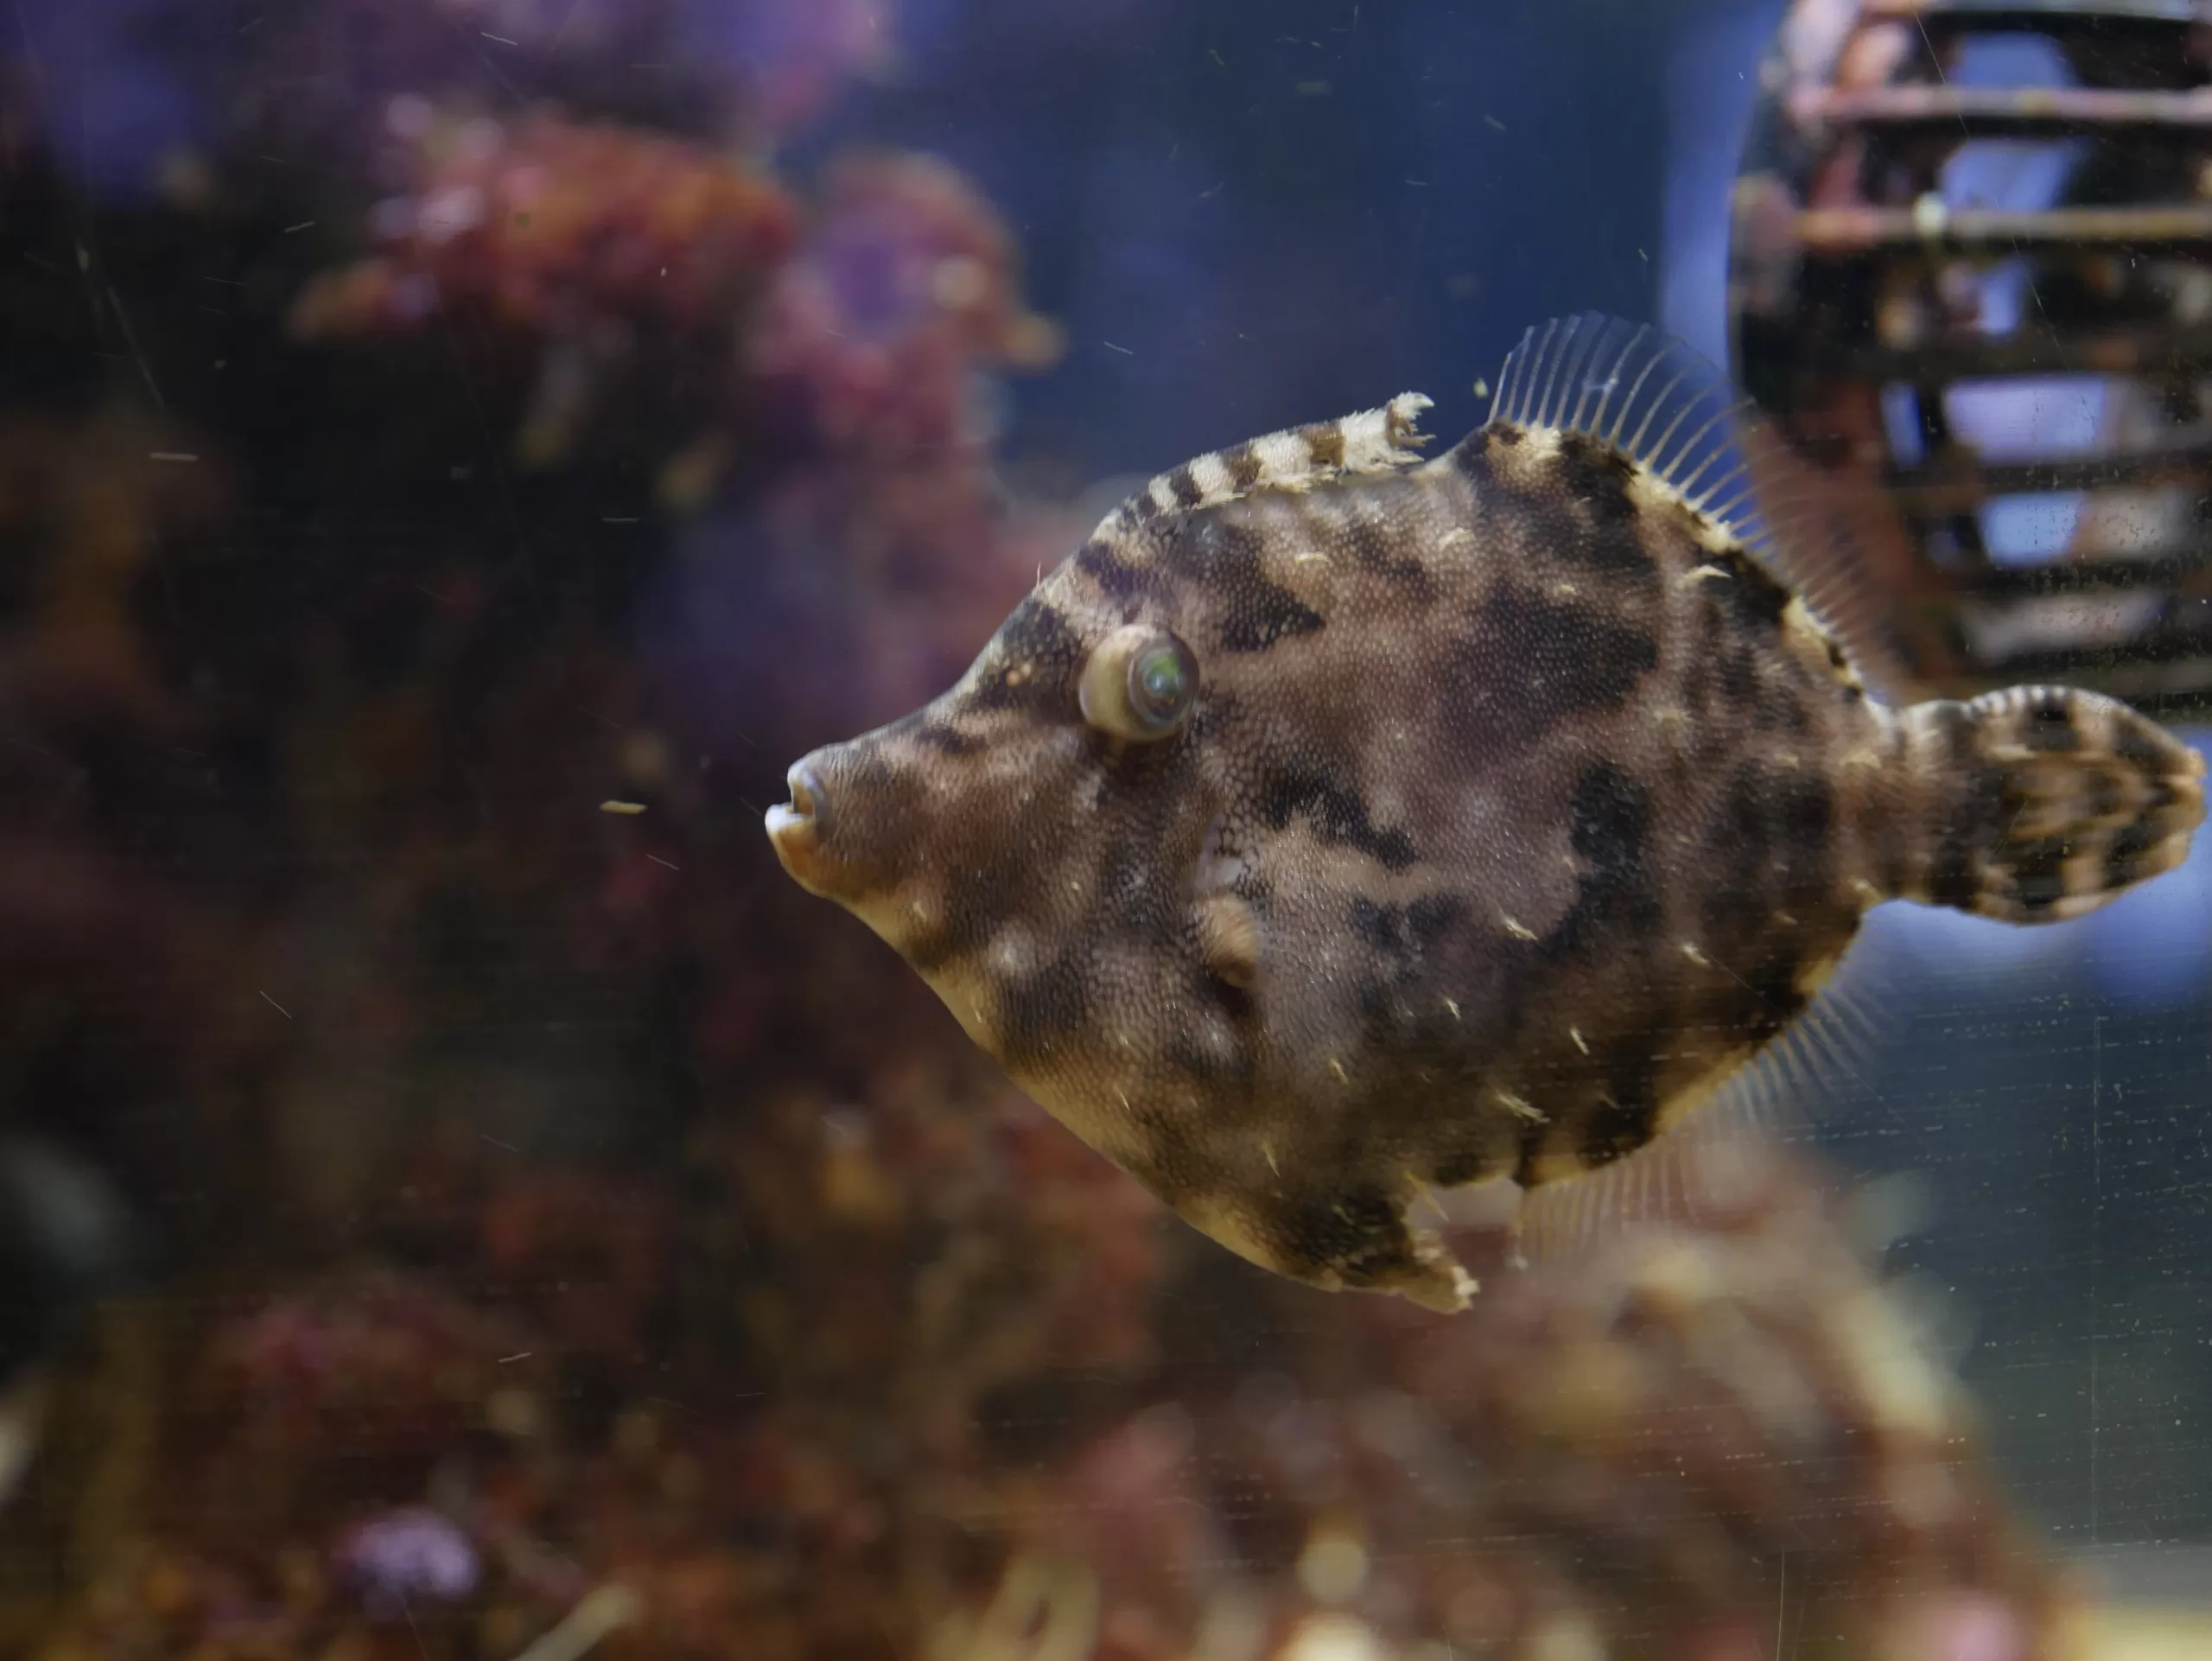 Kariyushi akvárium na Okinawě - Cestování po Japonsku - Petr Sycha